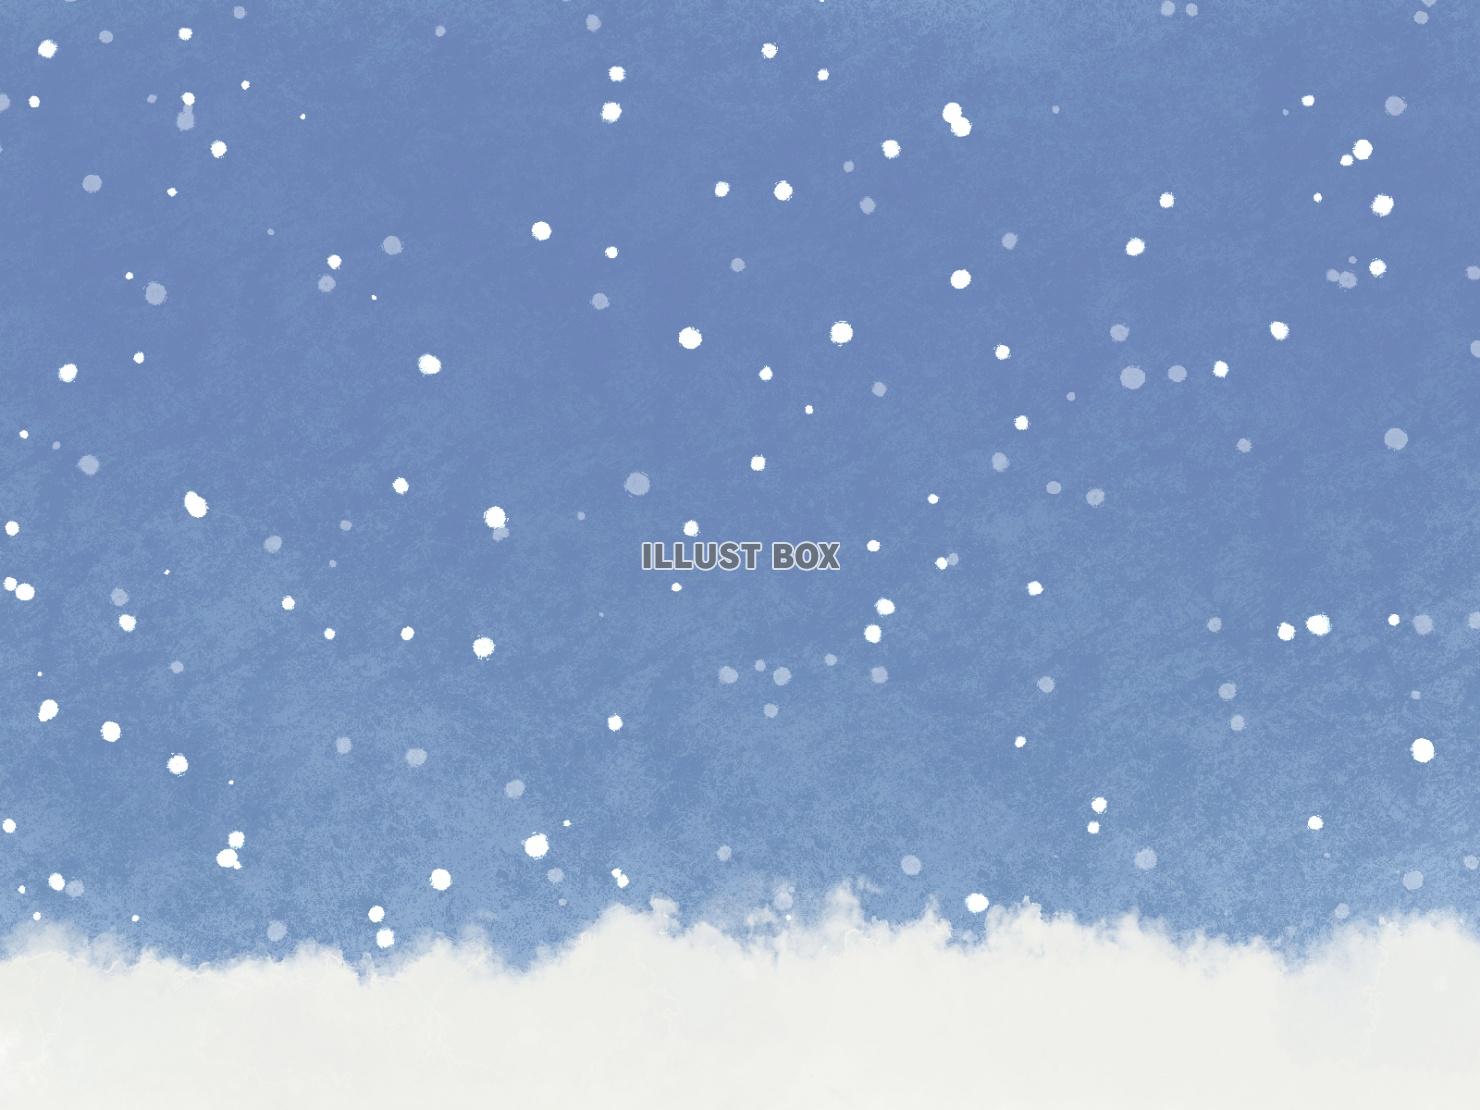 無料イラスト 絵本風の幻想的で可愛い絵本の様な雪が降る風景